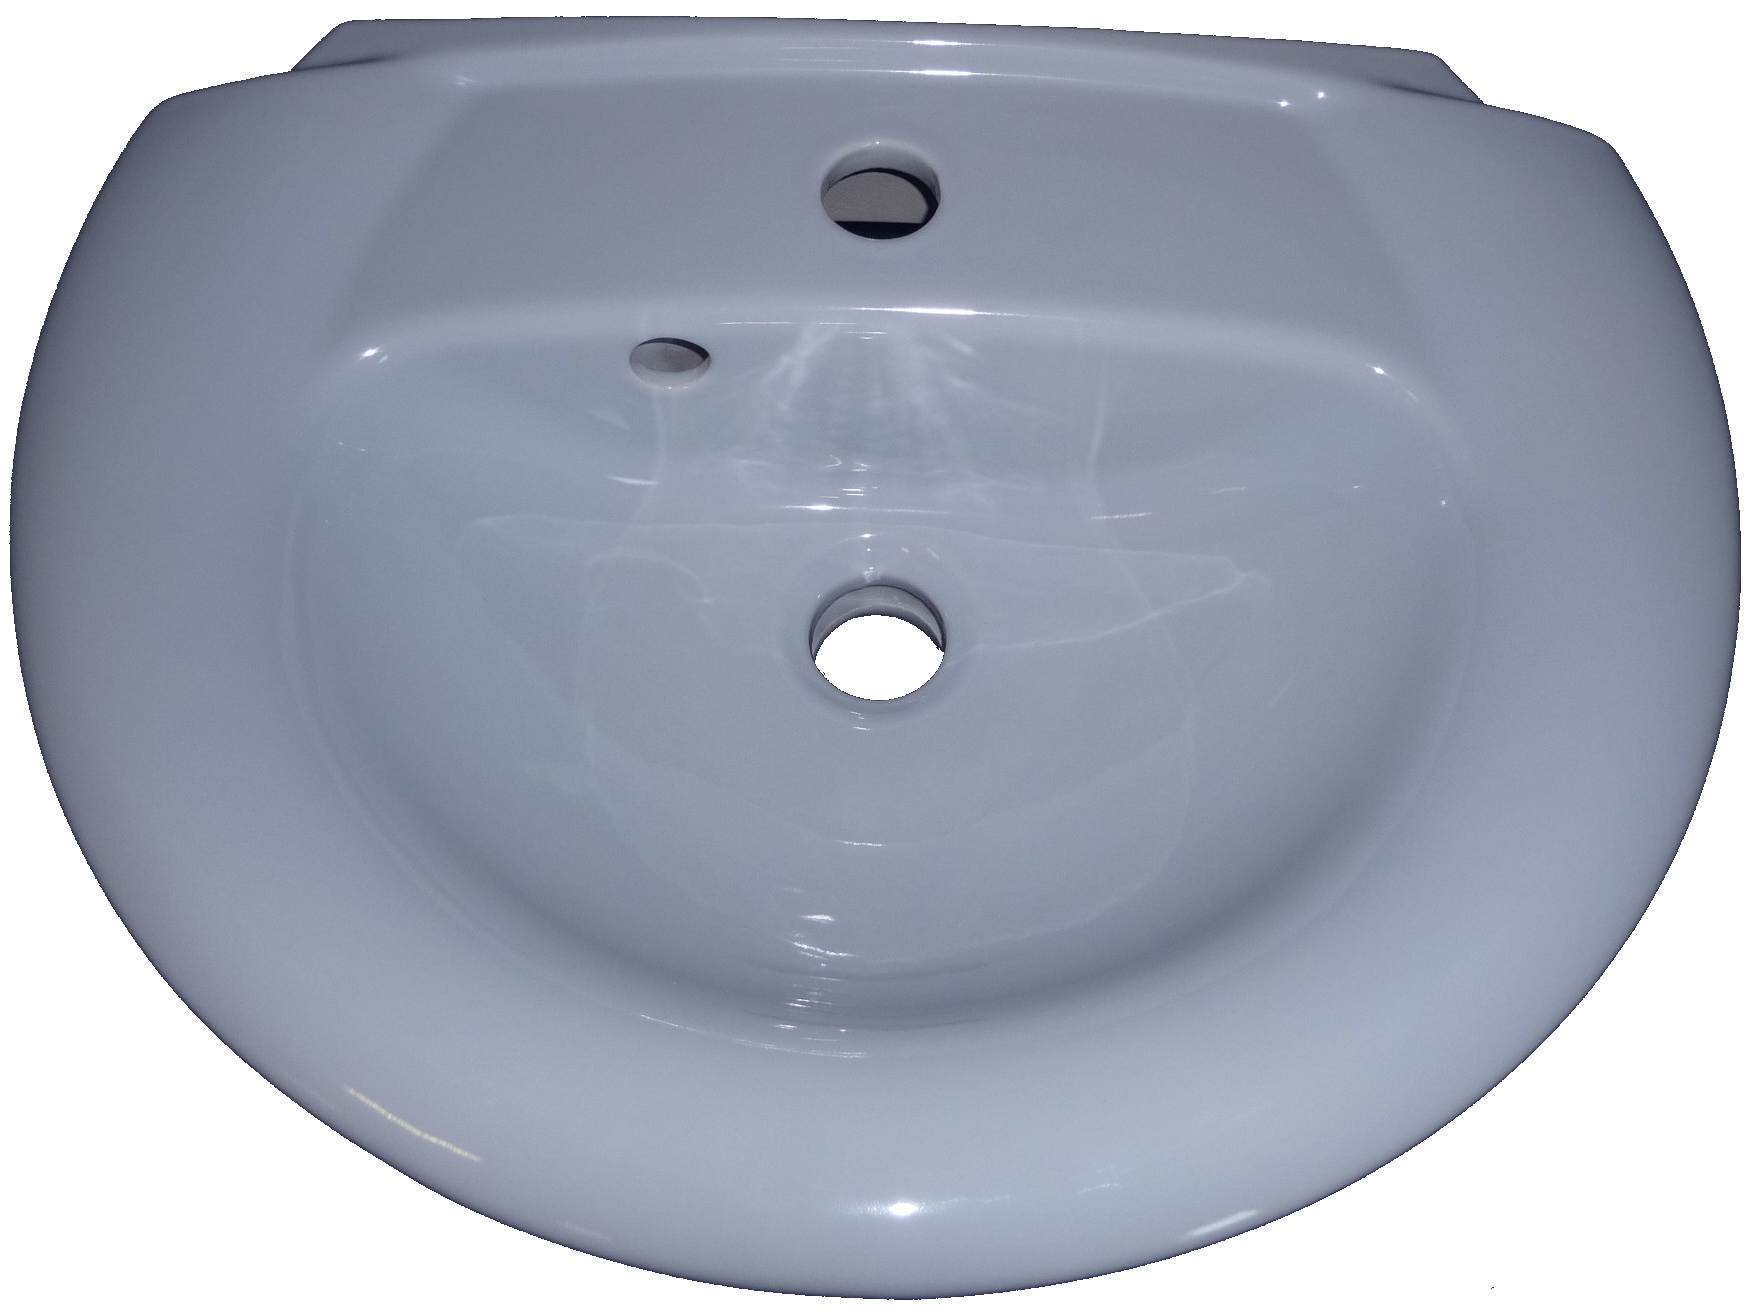 whisperblau Handwaschbecken 50x38 cm Ideal Standard Tizio 4233 Bild 1